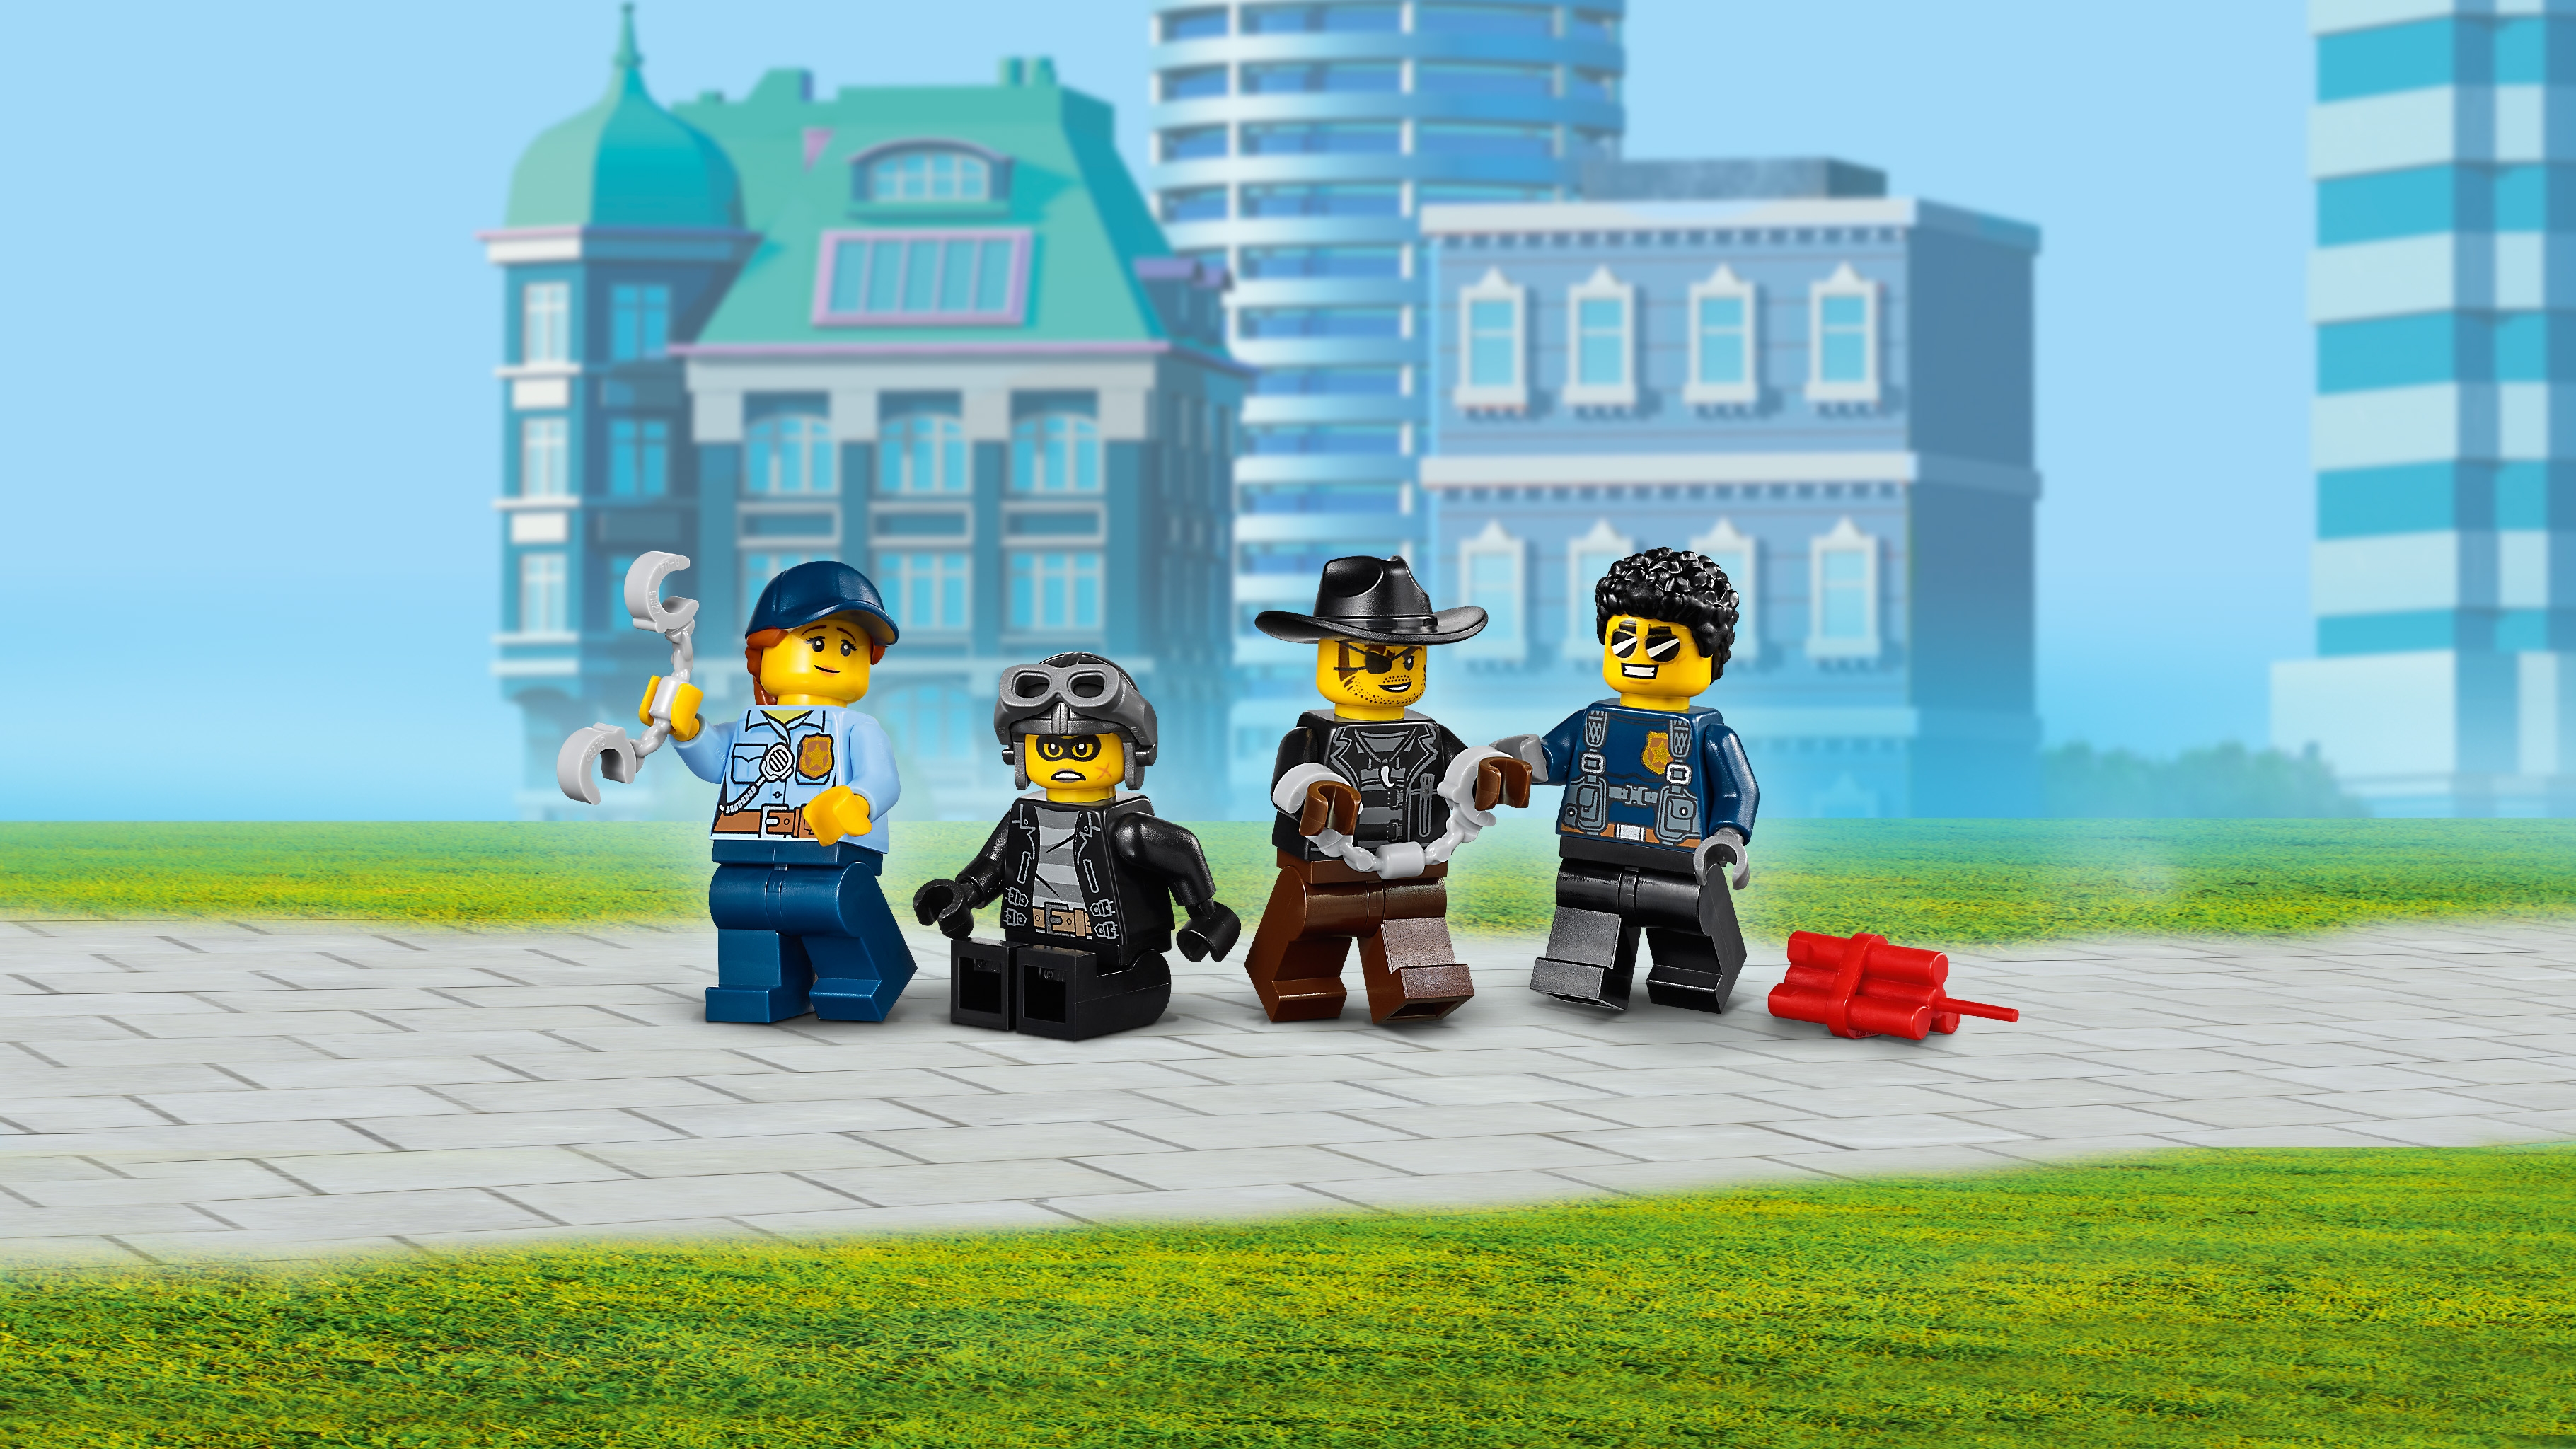 ドロボウの護送車 60276 - レゴ®シティ セット - LEGO.comキッズ